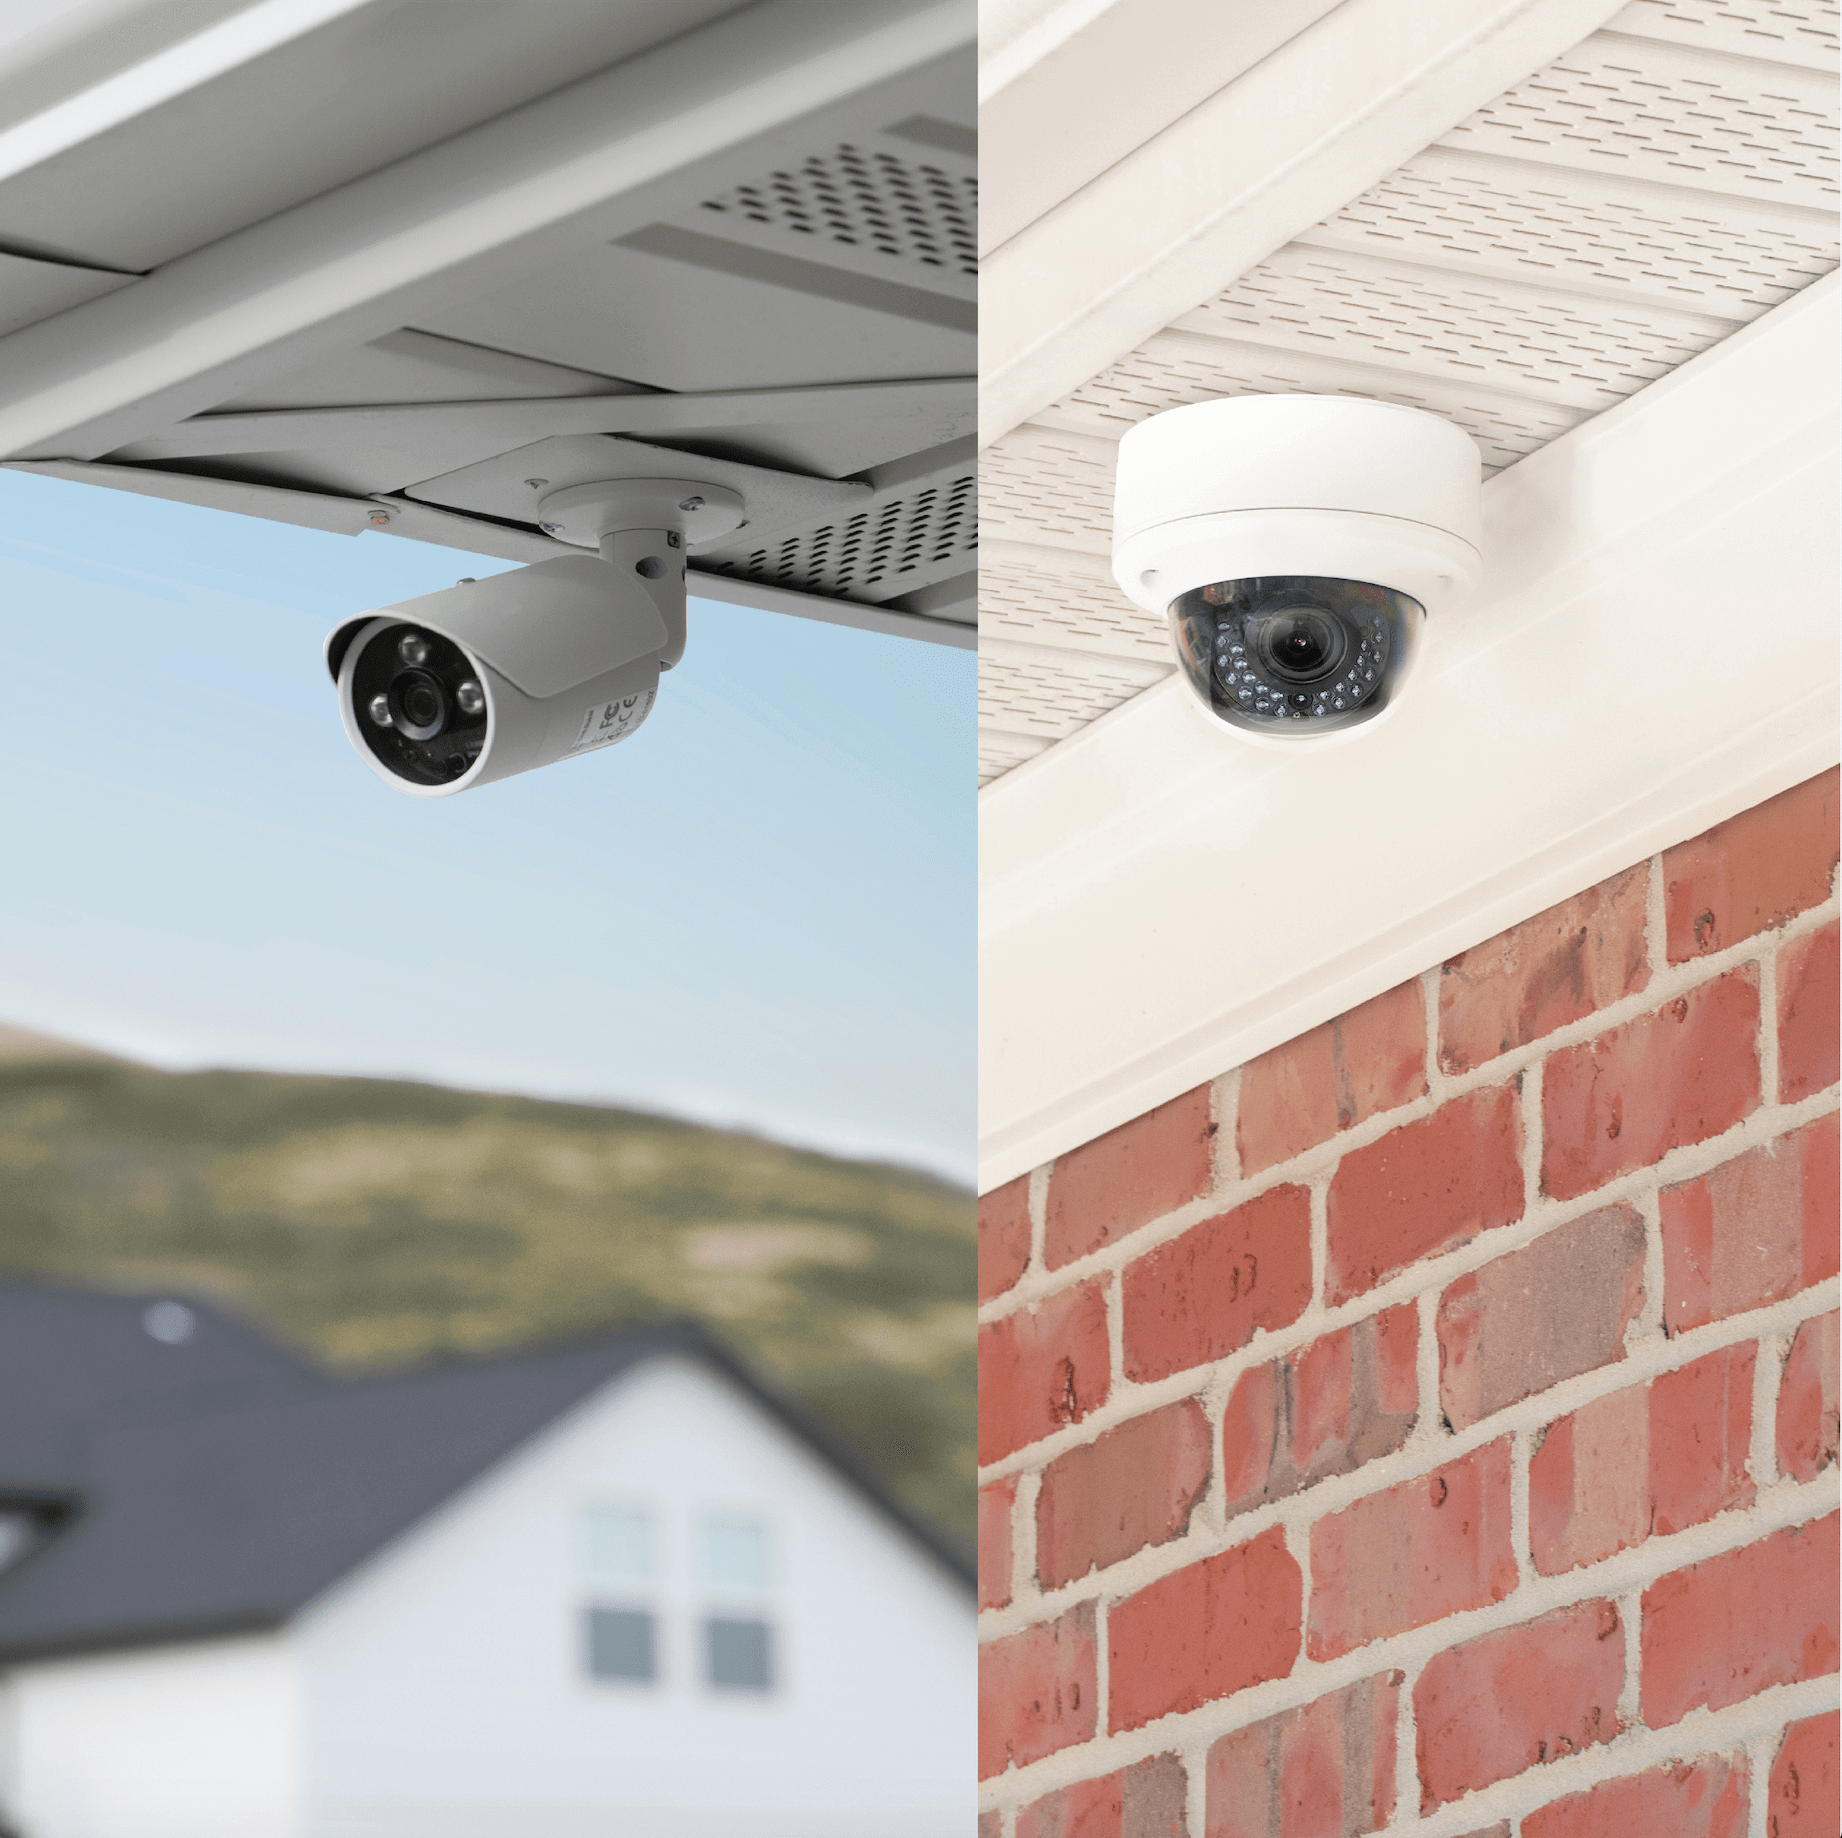 Control4 smart home security cameras